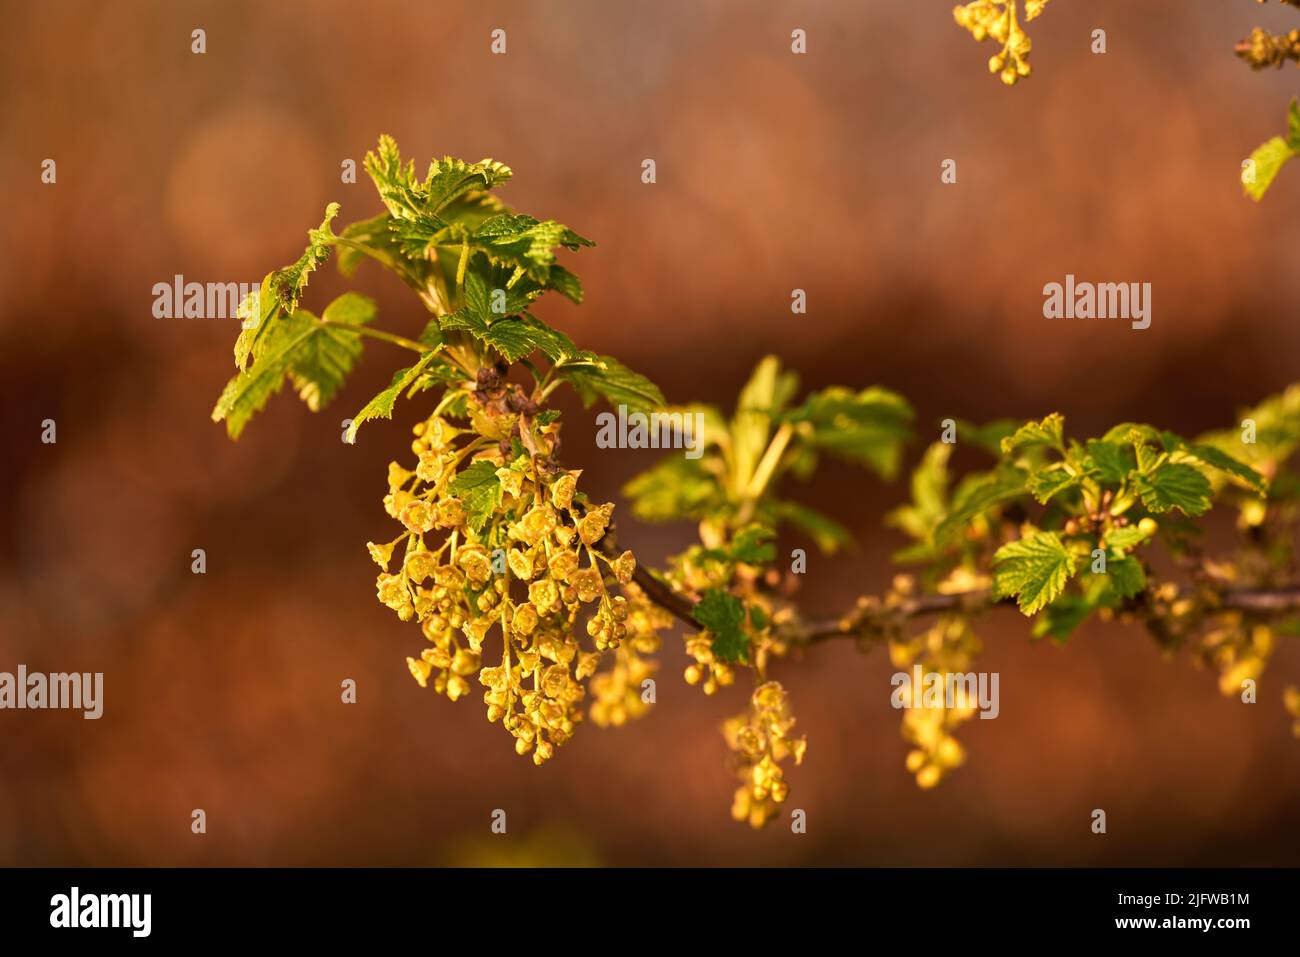 Macroscopio di fiori gialli-verdi fioriti di ribes e piccoli frutti di bosco fioriti su un ramo. Un ritratto di un fiore giallo con piccolo Foto Stock